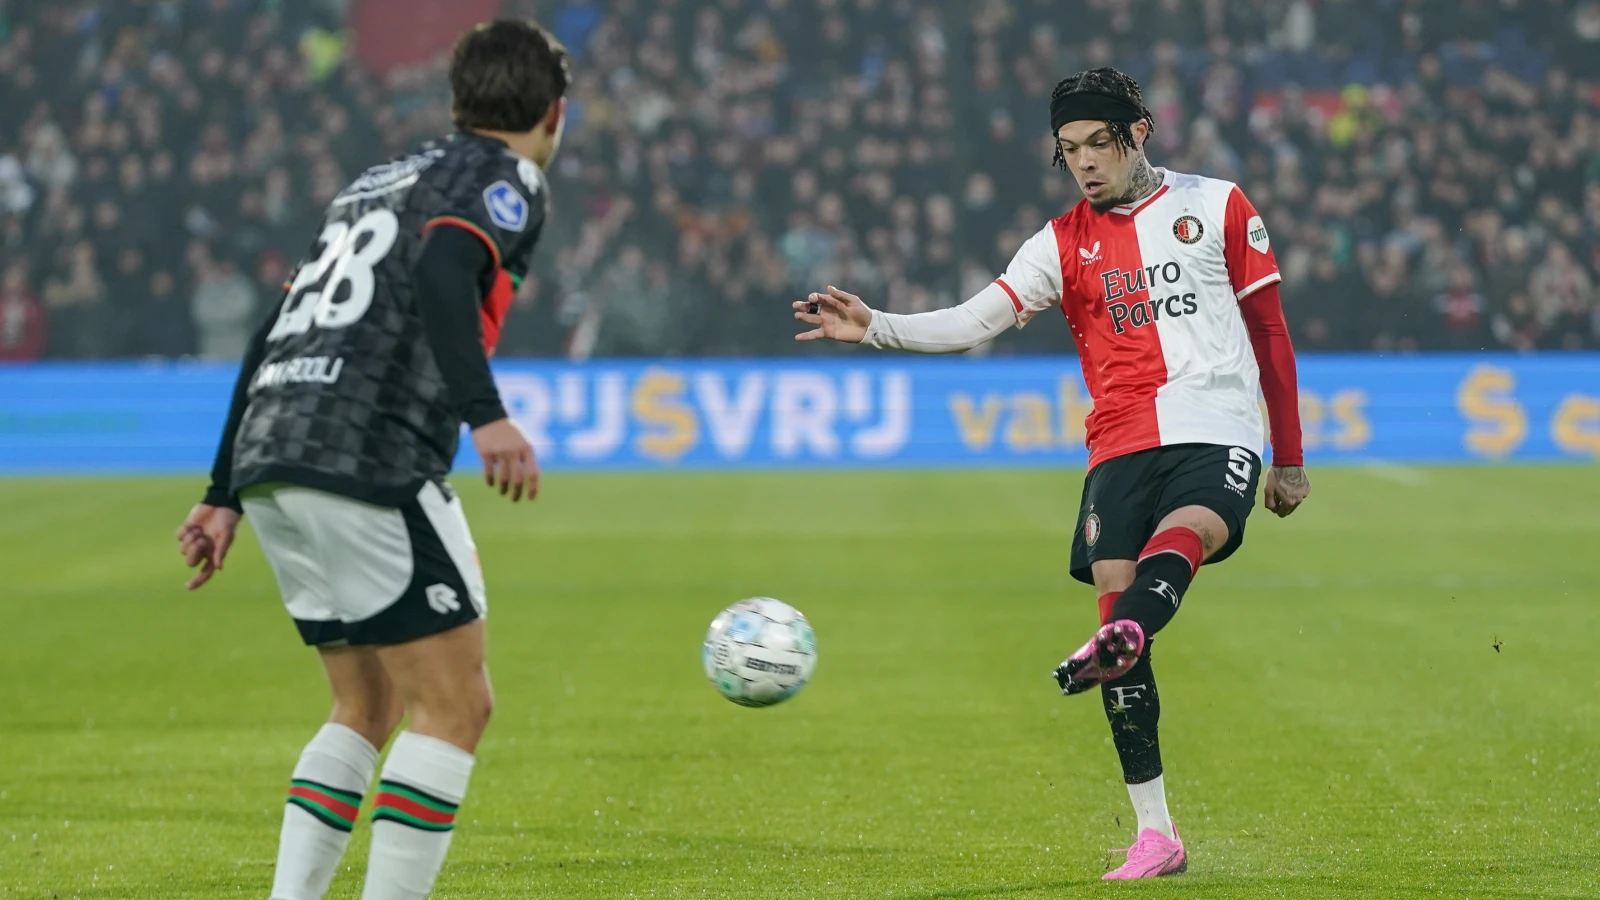 Nijmegen-Feyenoord, il pronostico: sfida da Gol, occhio al Multigol ospite